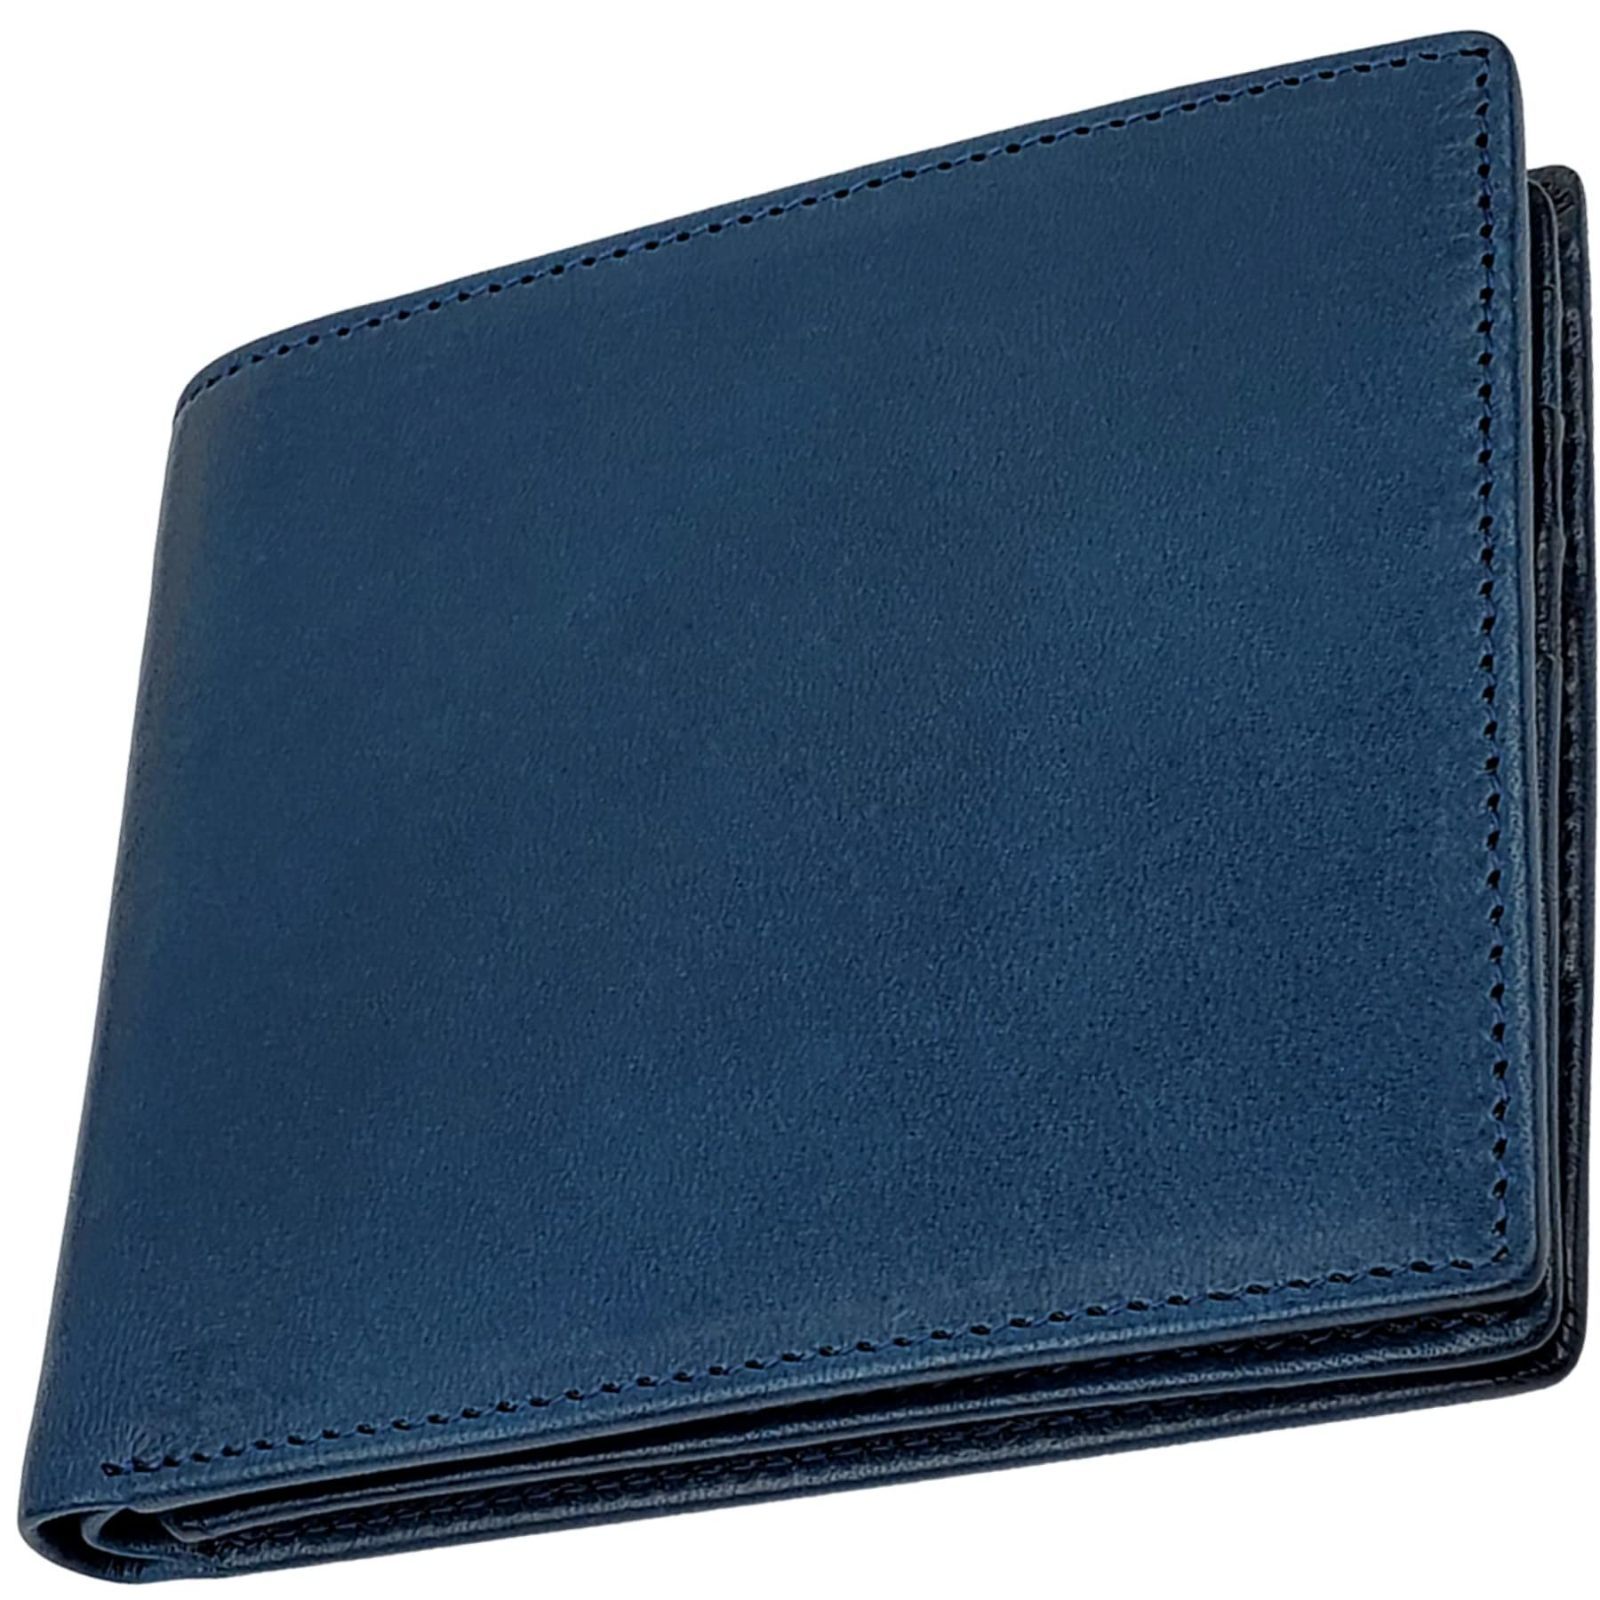 色: ブルー】ファブリツィオ 財布 メンズ 二つ折り ボックス型 小銭